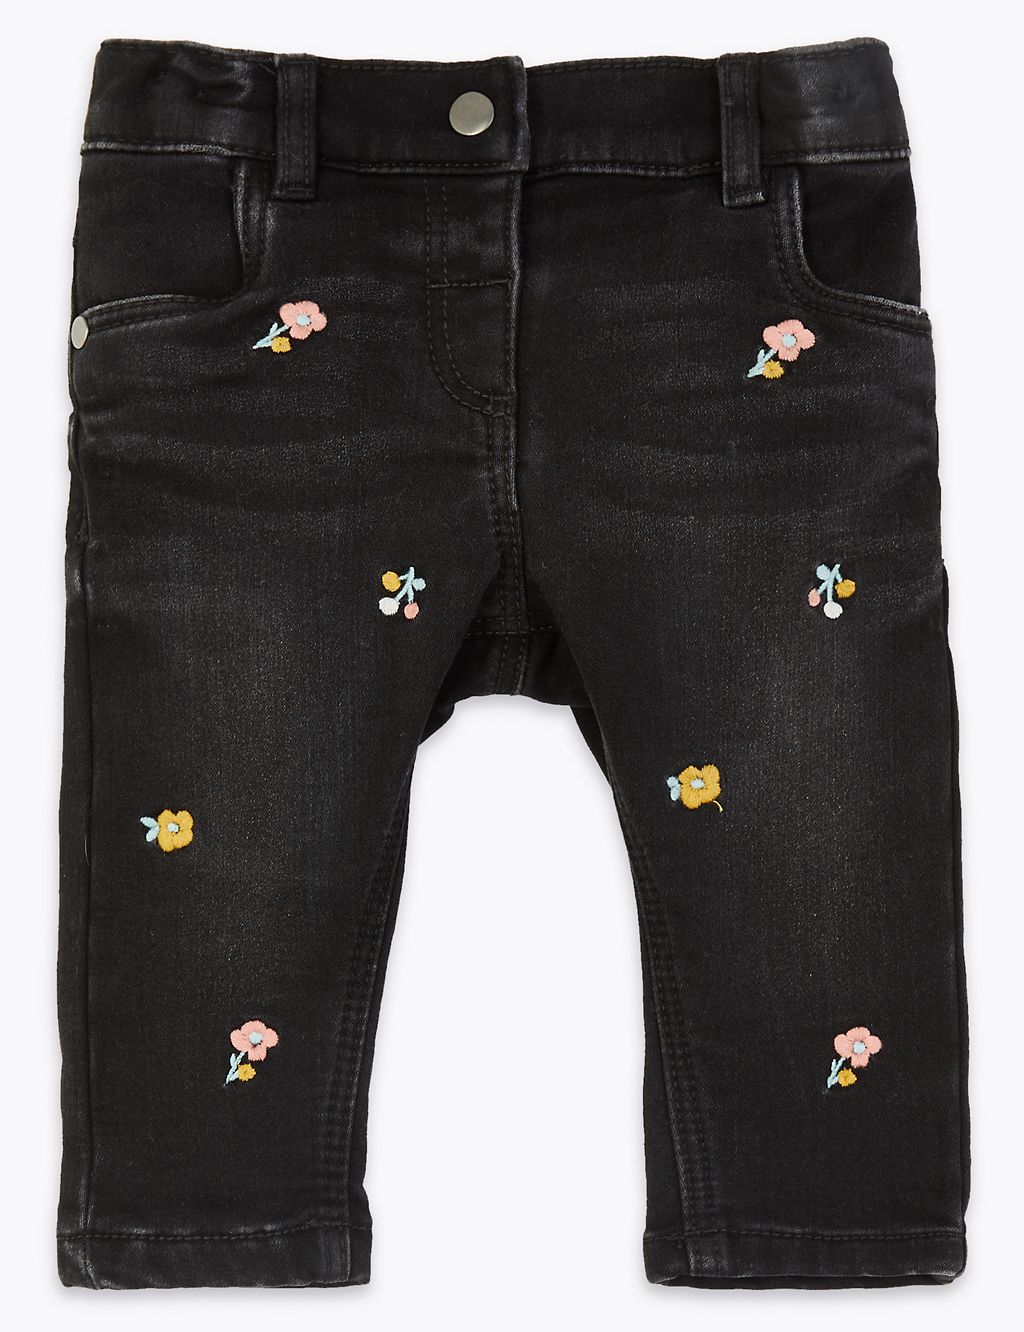 Denim Floral Jeans 3 of 3